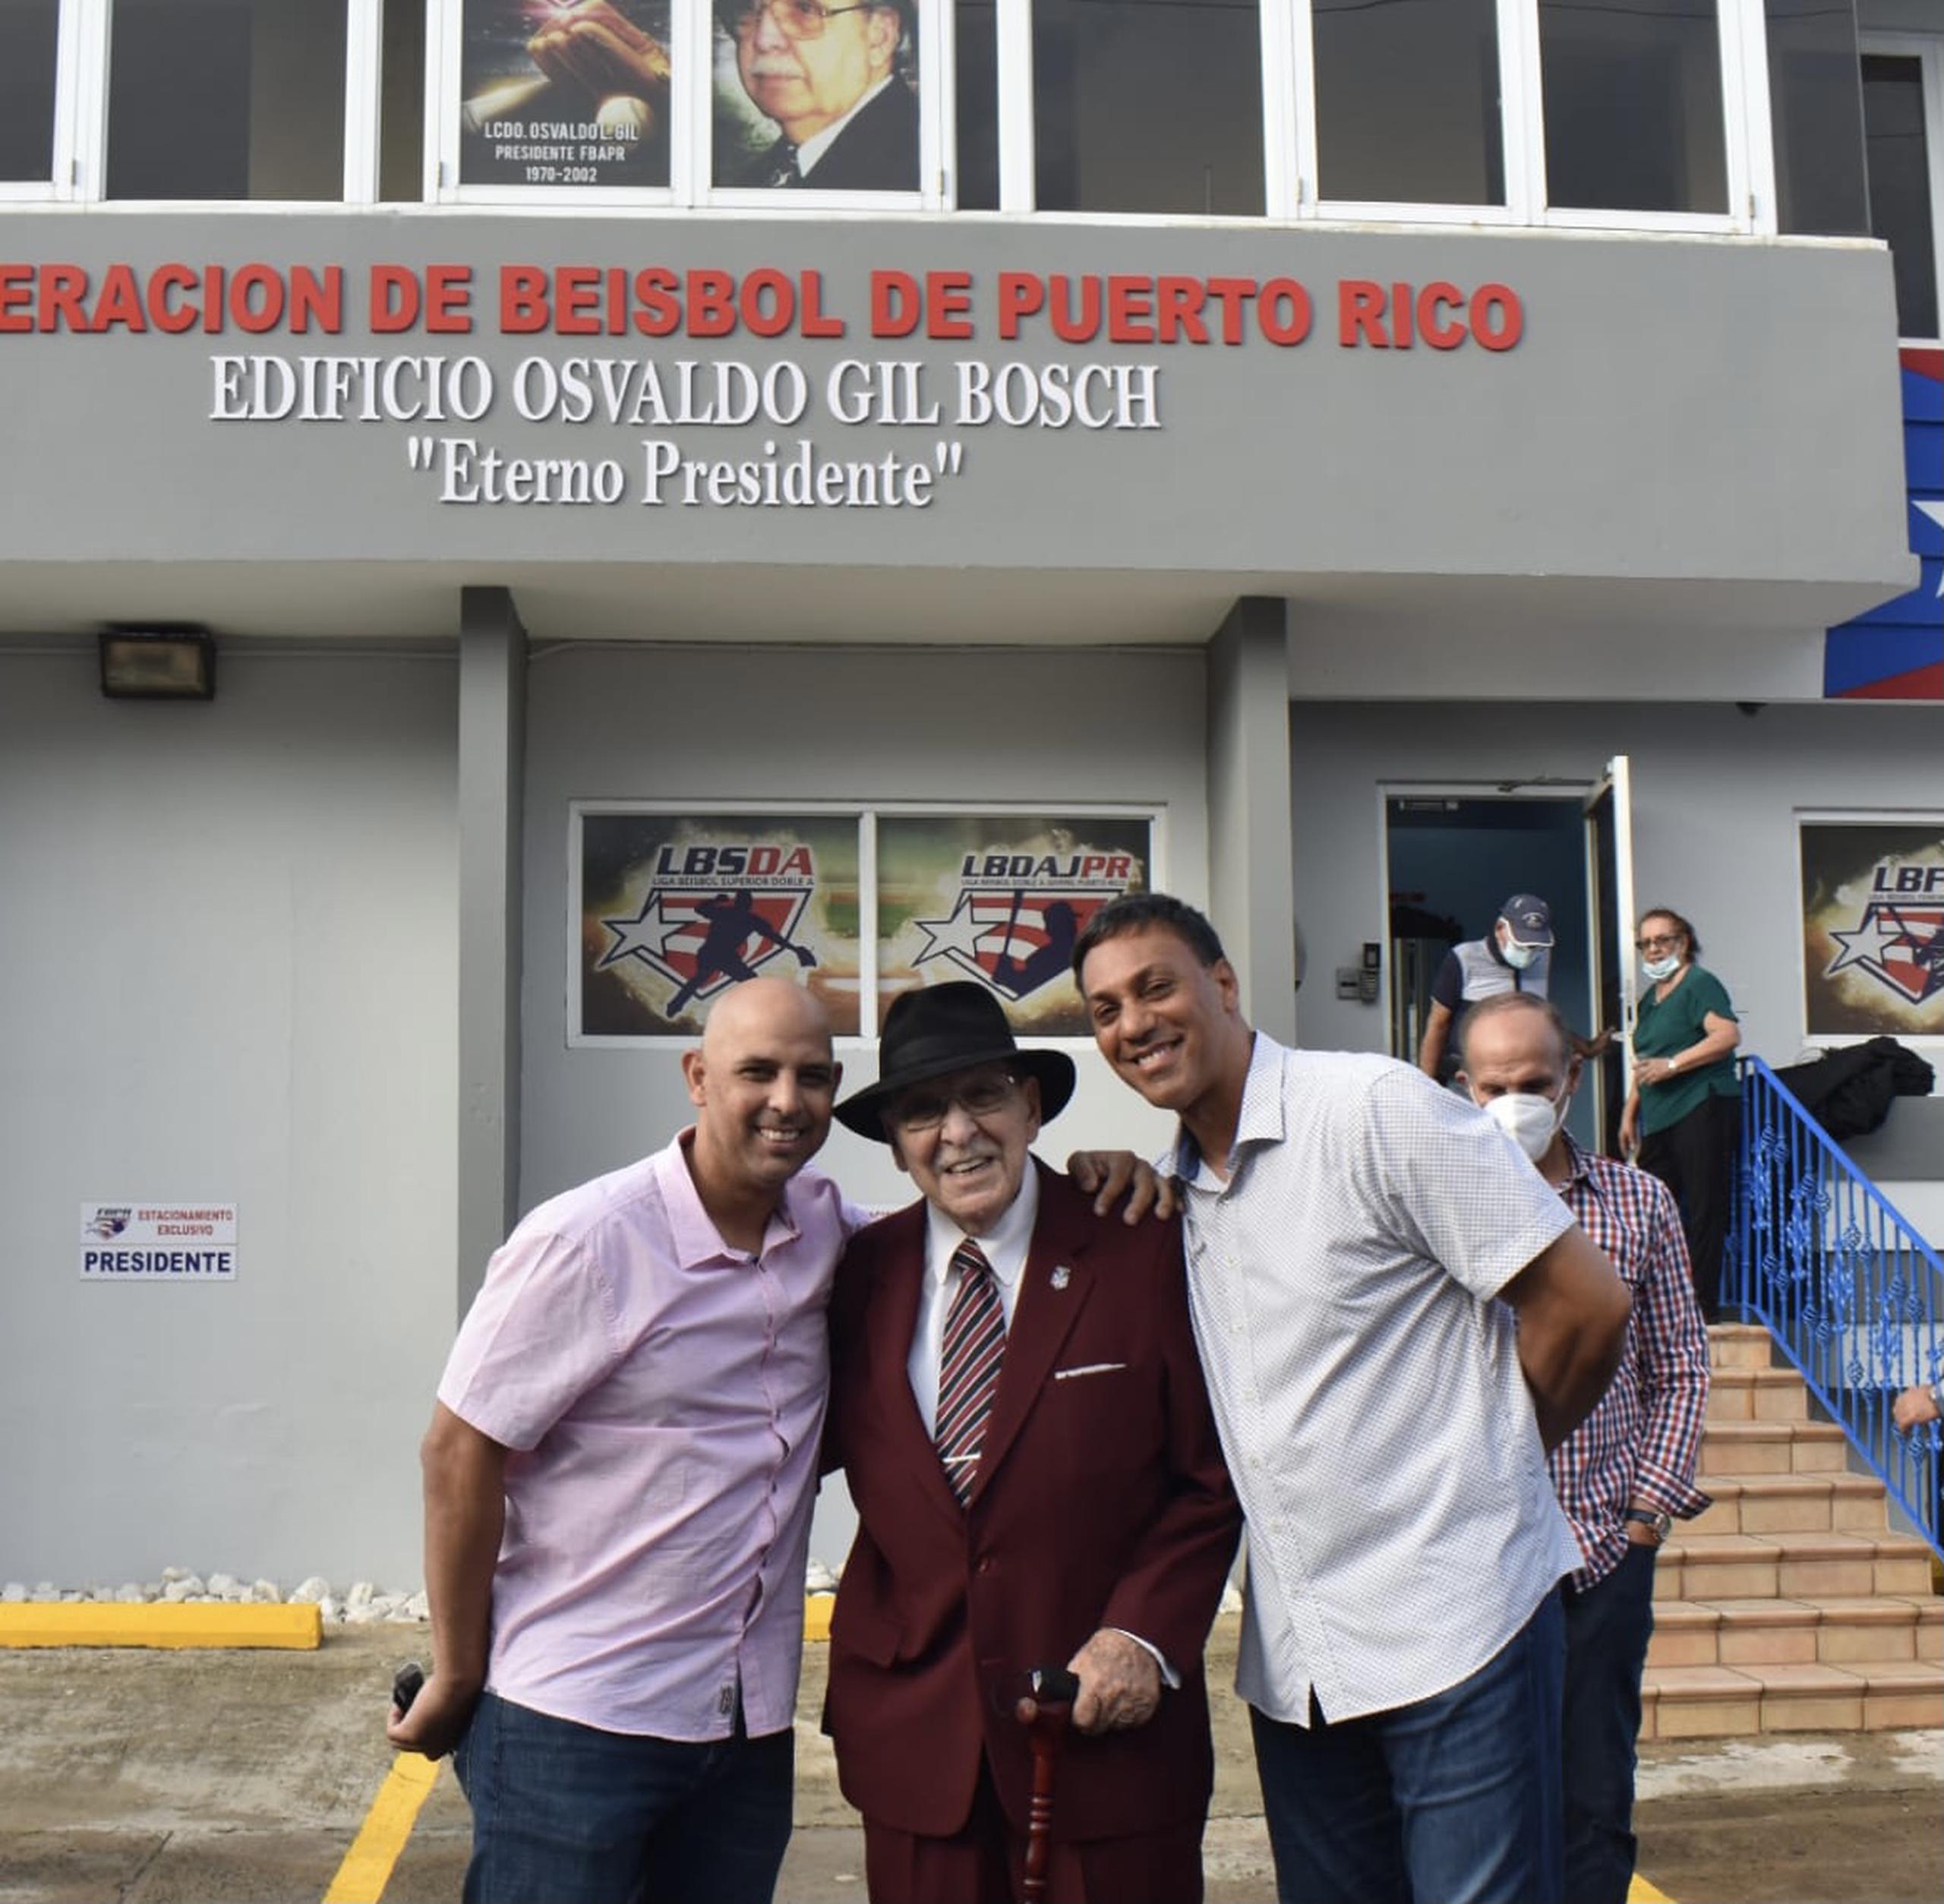 Alex Cora y Juan "Igor" González, respectivamente a la izquierda y derecha en la foto, posan junto al Lic. Osvaldo Gil Bosch frente al edificio que alberga la Federación de Béisbol de Puerto Rico y que quedó bautizado a su nombre este pasado sábado.